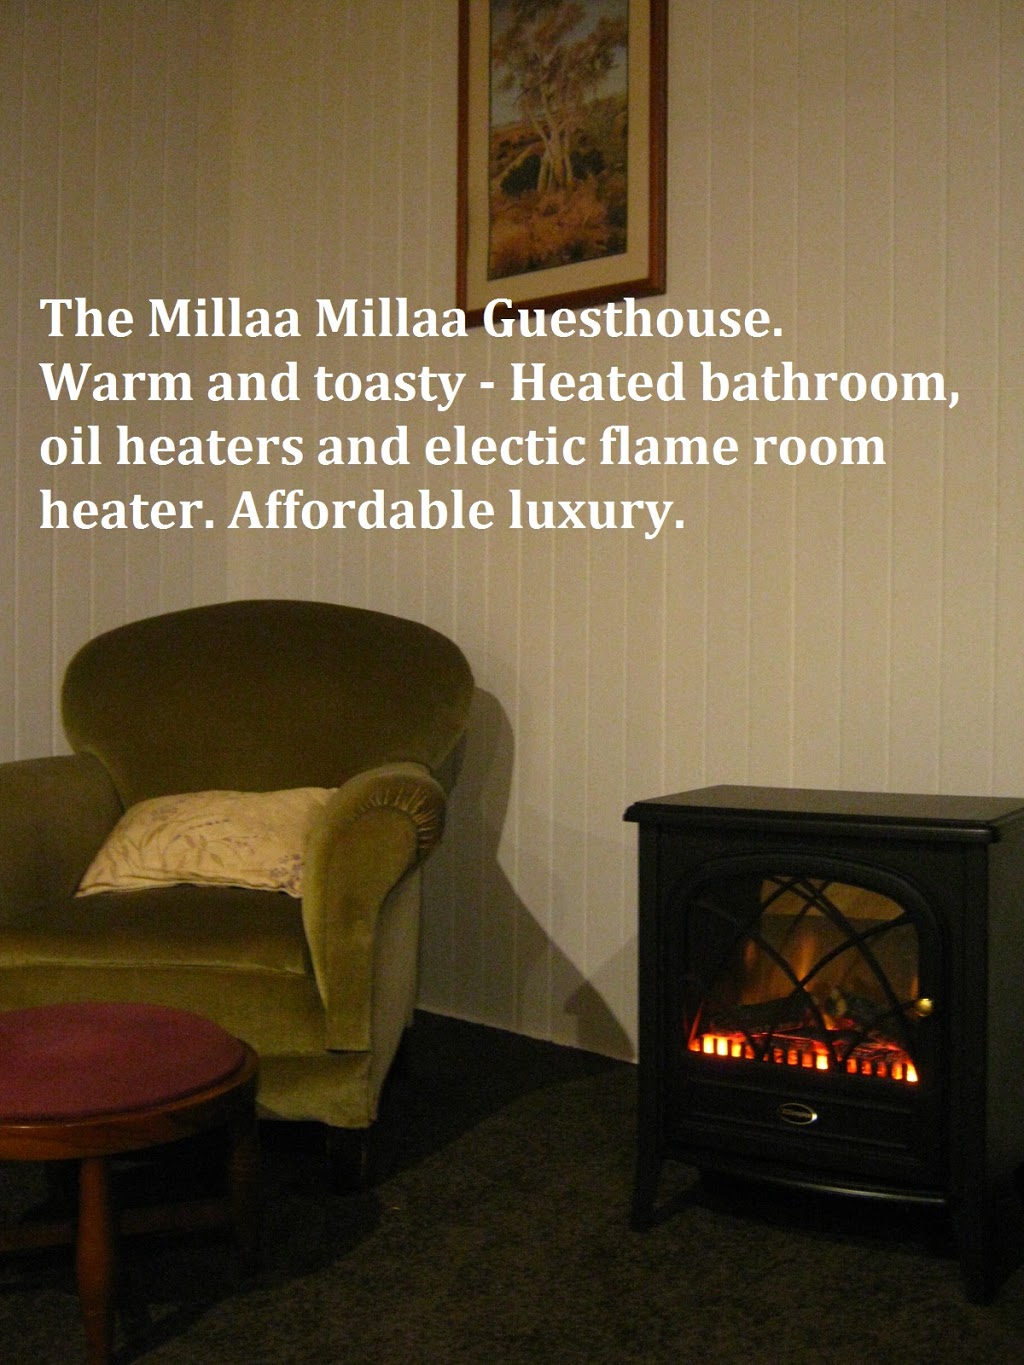 Millaa Millaa Guesthouse | lodging | 6 Maple St, Millaa Millaa QLD 4886, Australia | 0419357114 OR +61 419 357 114